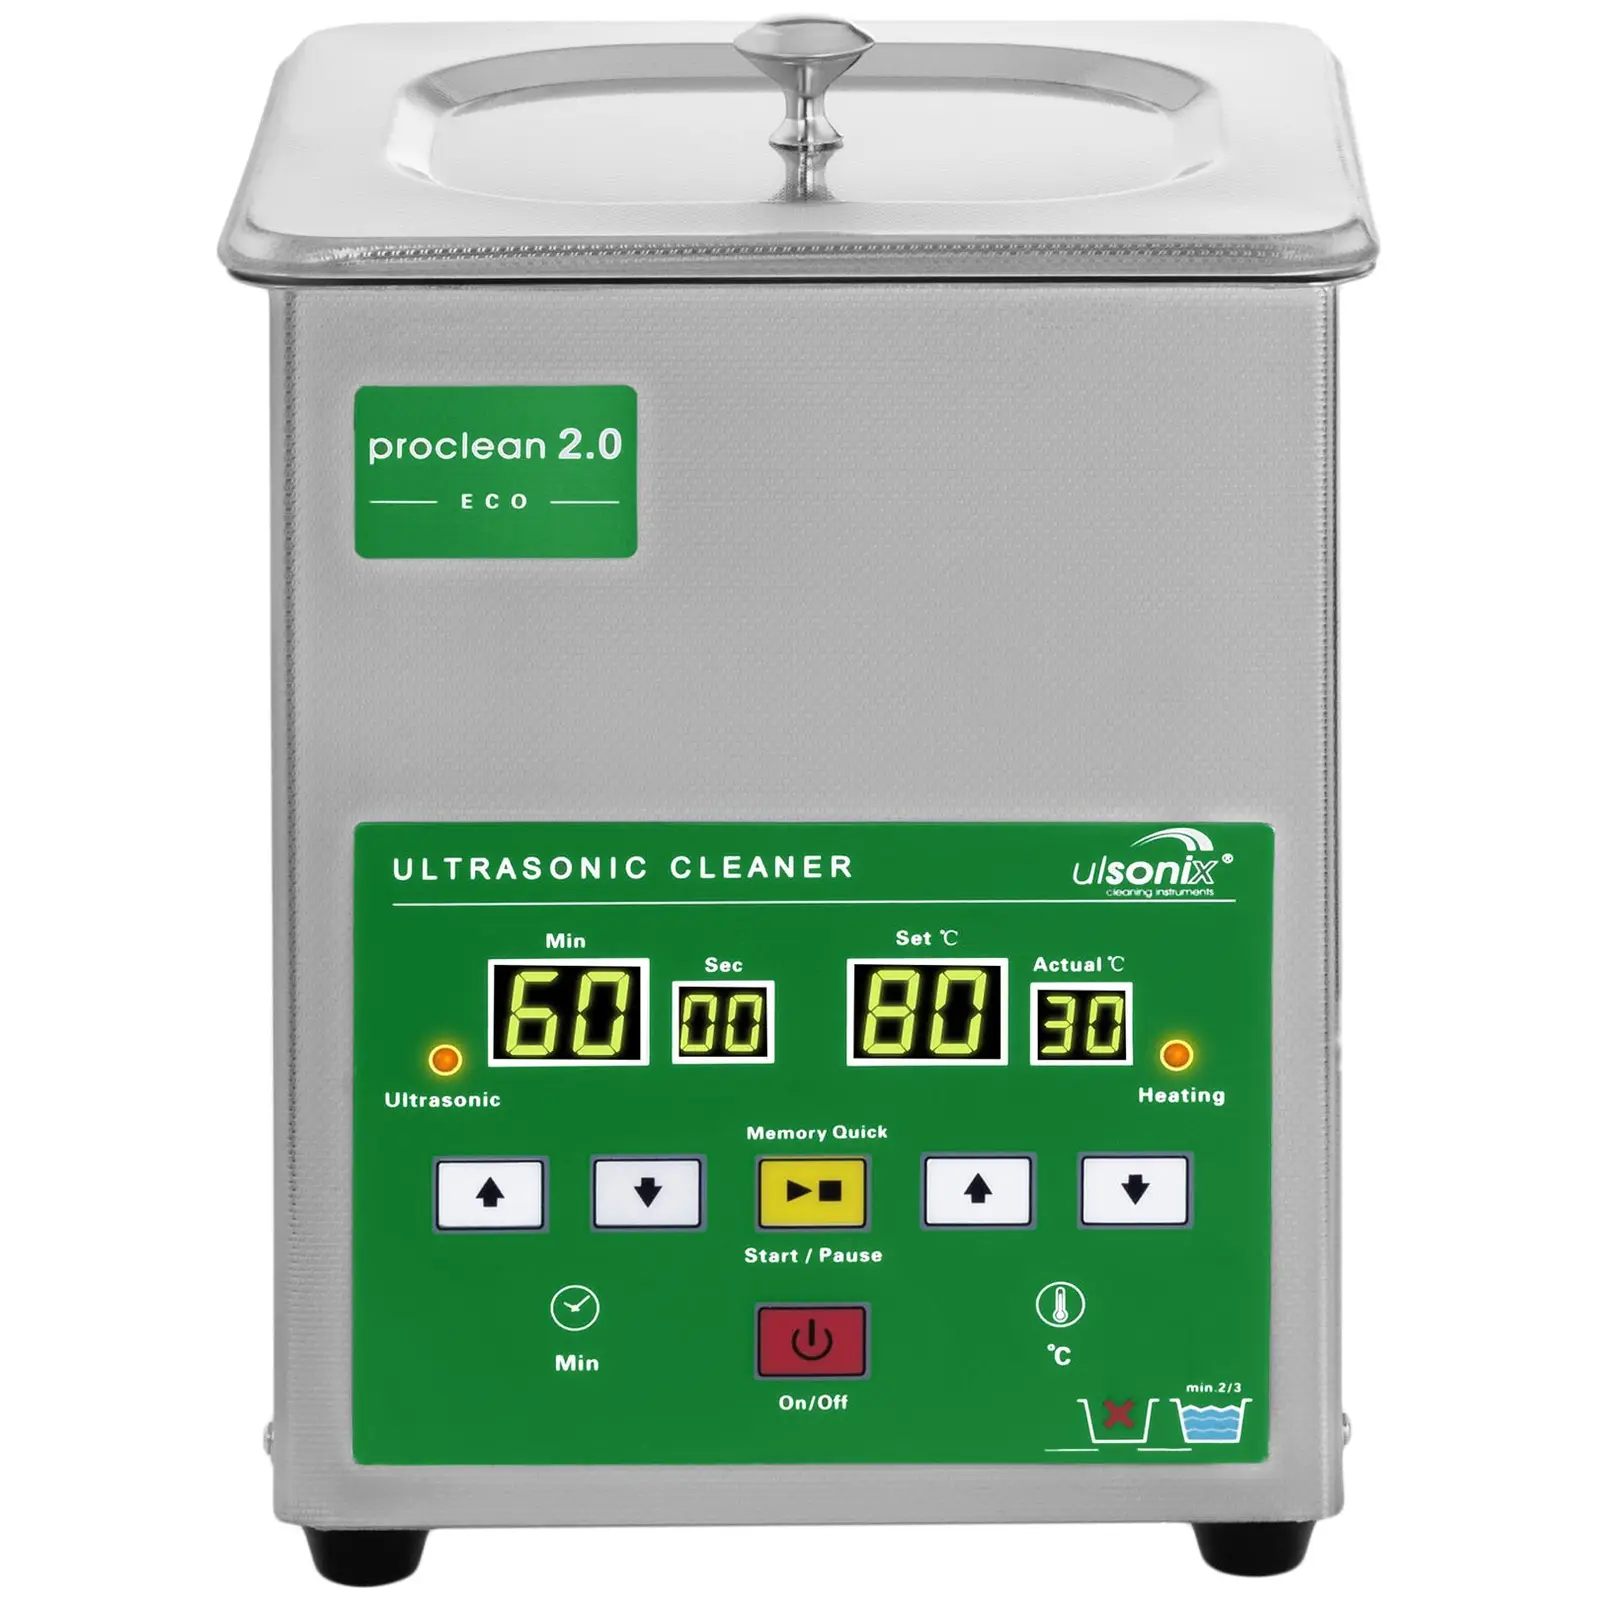 Ultrahangos tisztító - 2 liter - 60 W - Gyors memória Eco